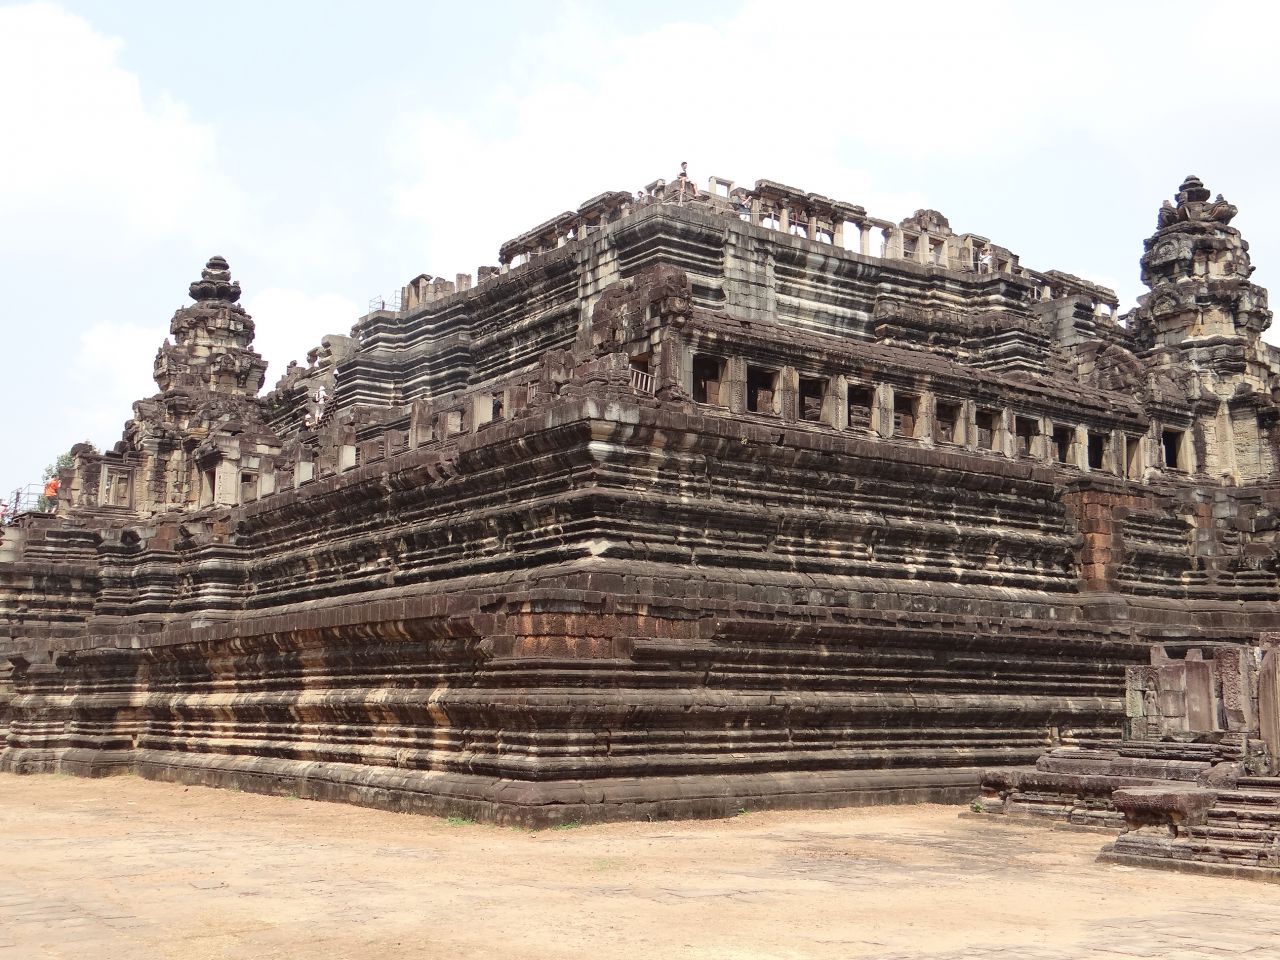 Храм Бапхуон был построен примерно в 1060 году, за сто лет до Ангкор Вата. В следствии того, что храм построен на искусственном насыпном холме, почва которого насыщена песком, большая часть храма была разрушена.Возможность установить и устранить причины разрушения храма появилась только в наши дни. К сожалению, при восстановлении Бапхуона очень часто приходится применять современные строительные материалы, такие, как железобетон. Реконструкция была частично завершена в апреле 2011 года и храм открыли для посещения. - Камбоджа, Лаос. Февраль 2014. Часть 2. Ангкор.